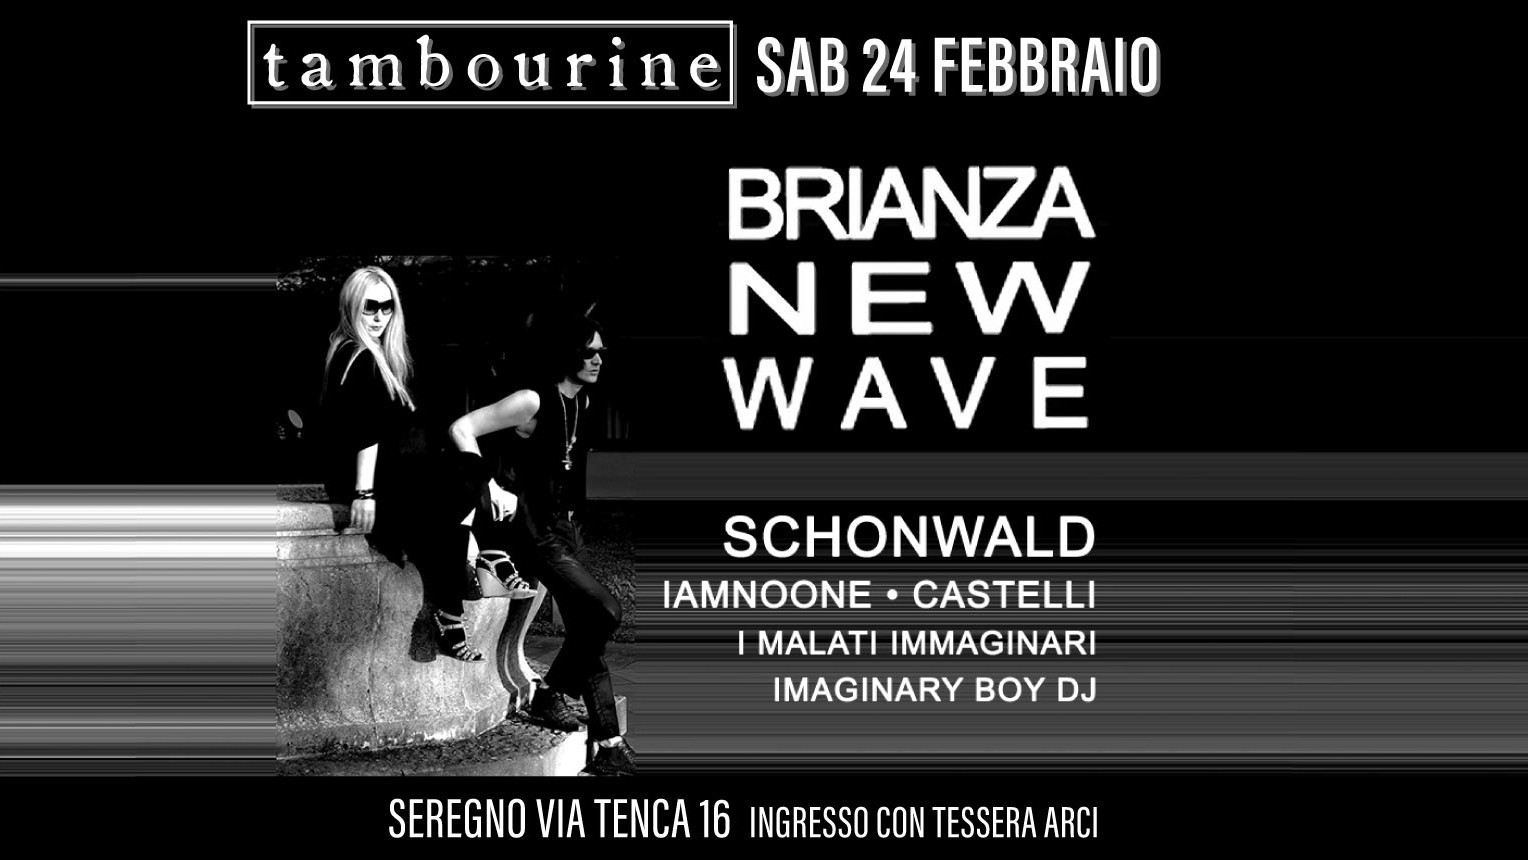 Brianza New Wave